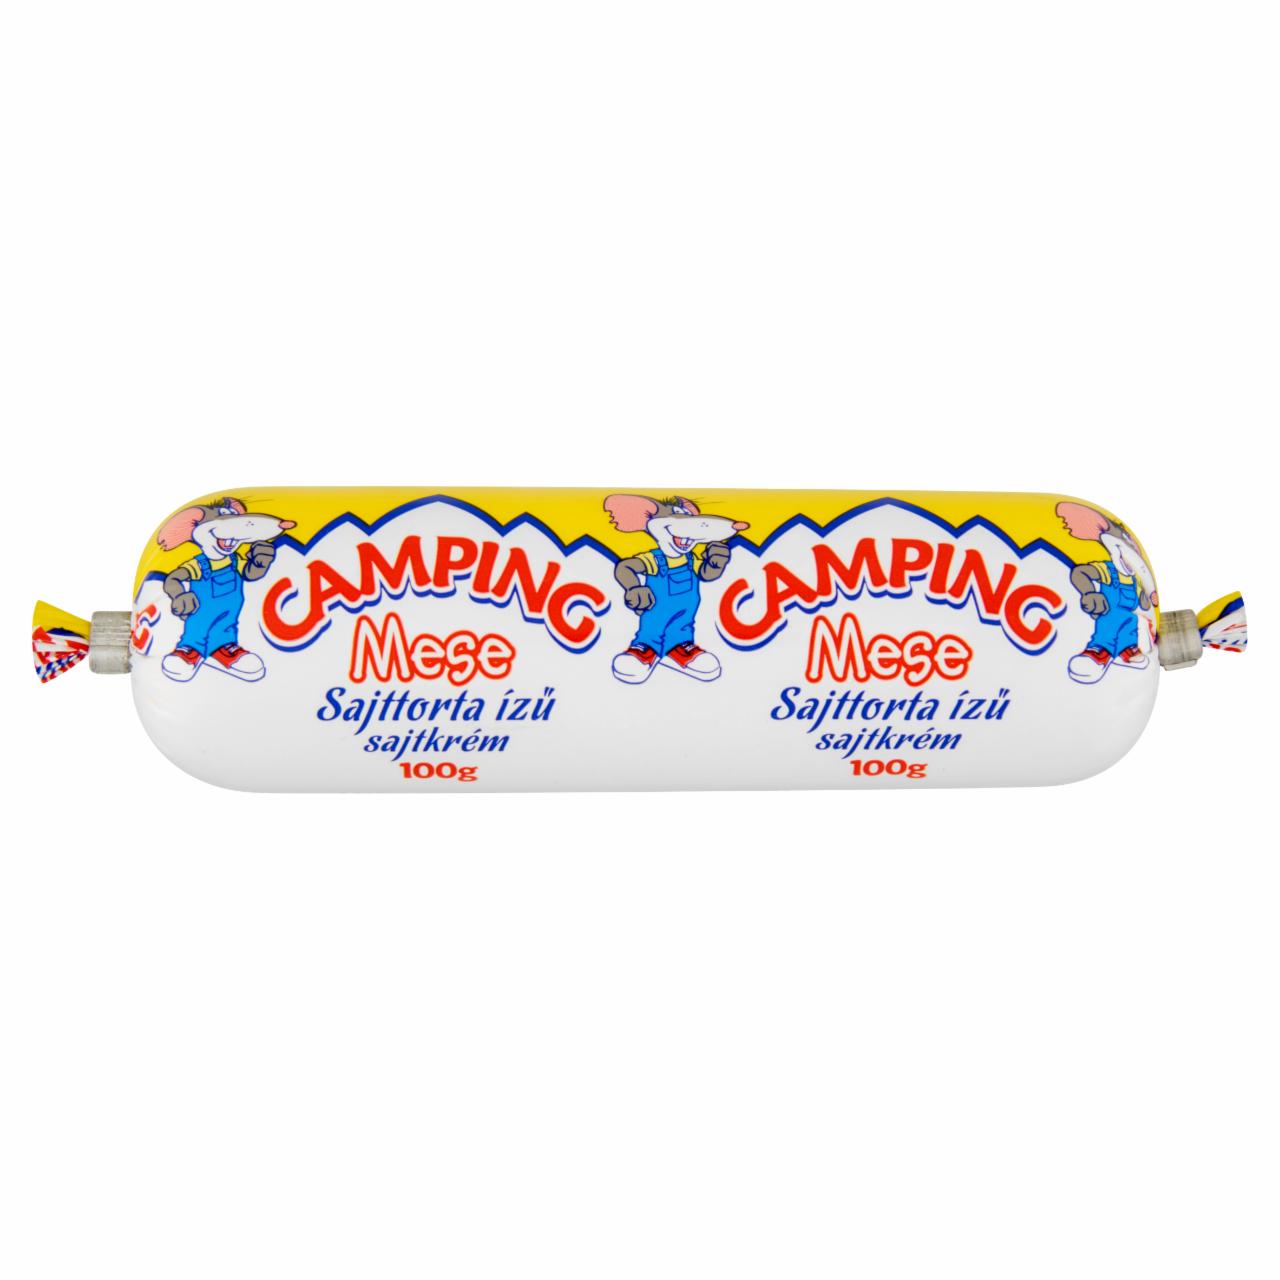 Képek - Camping Mese sajttorta ízű sajtkrém 100 g